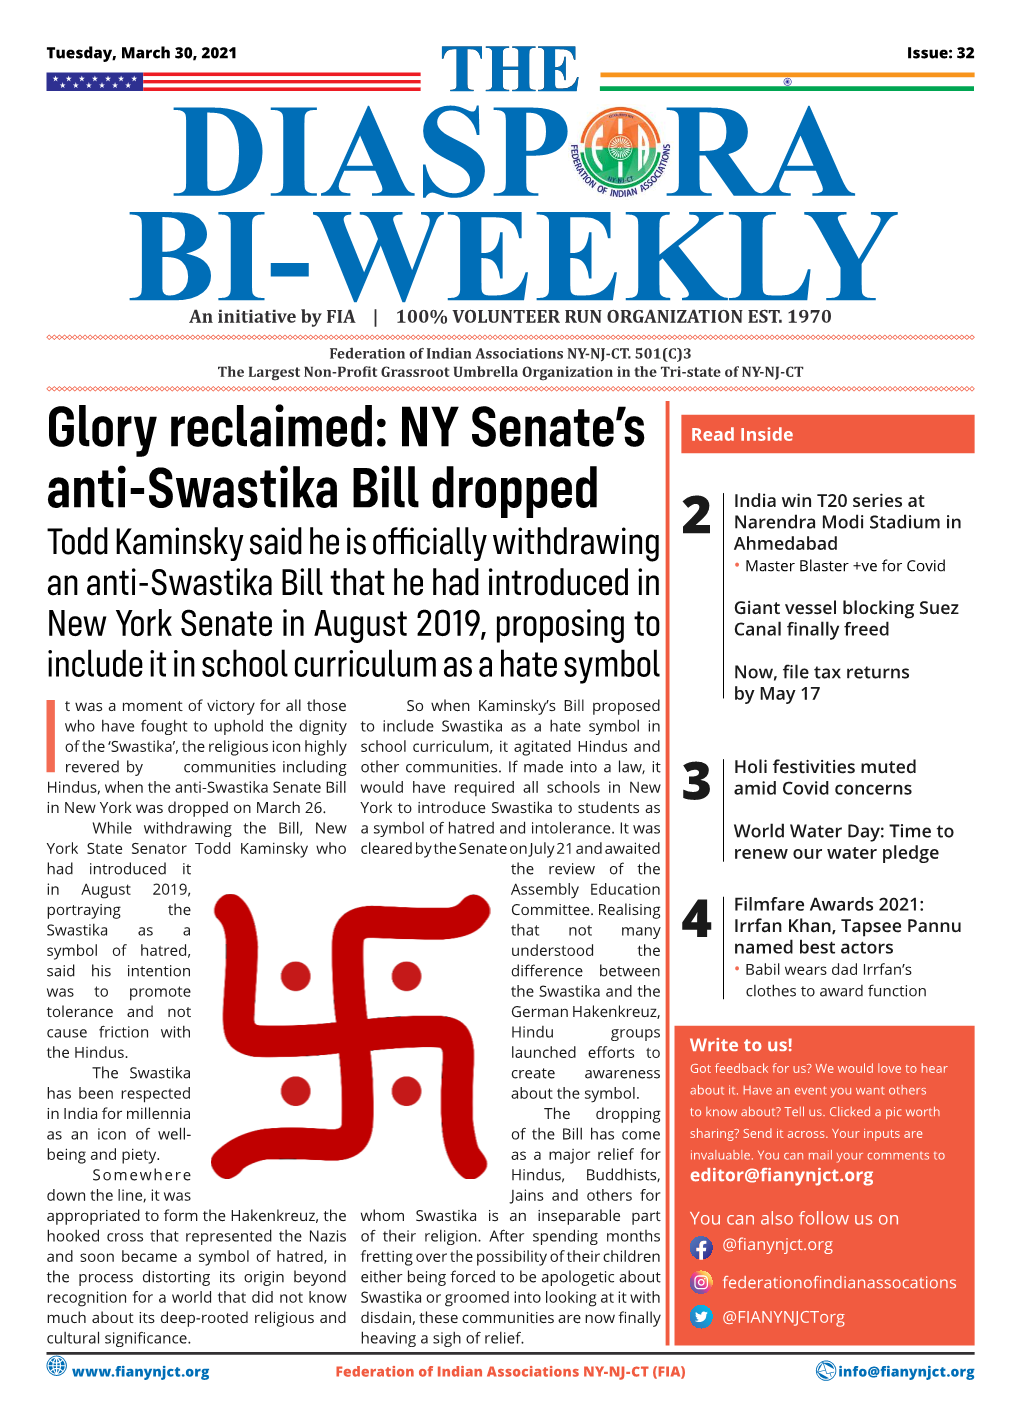 Glory Reclaimed: NY Senate's Anti-Swastika Bill Dropped